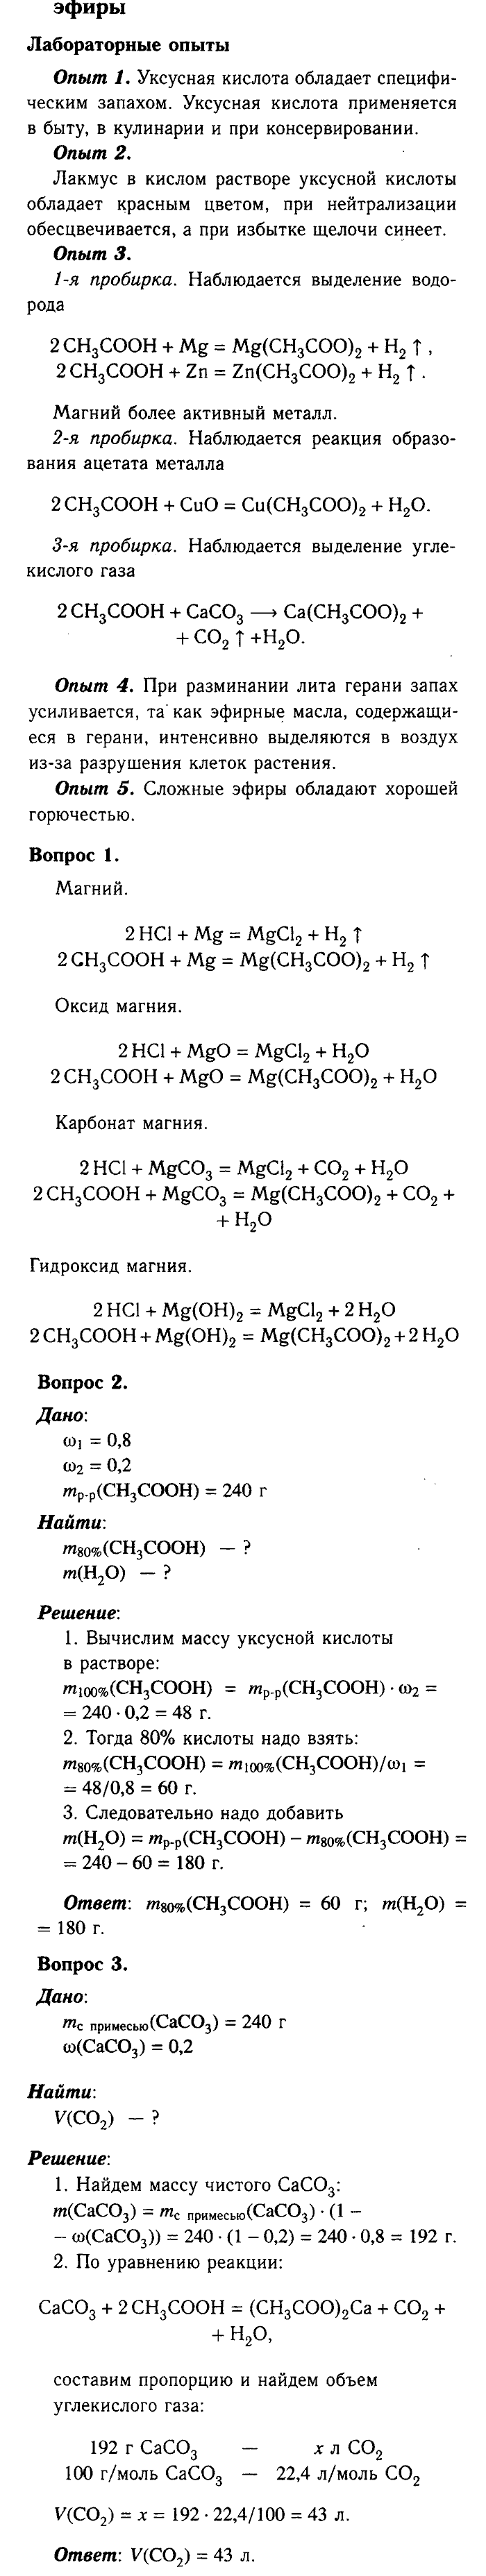 Химия, 9 класс, Габриелян, Лысова, 2002-2012, Параграф 36  (Глава пятая. Органическая химия. § 36. Предельные одноосновные карбоновые кислоты. Сложные эфиры) Задача: § 36